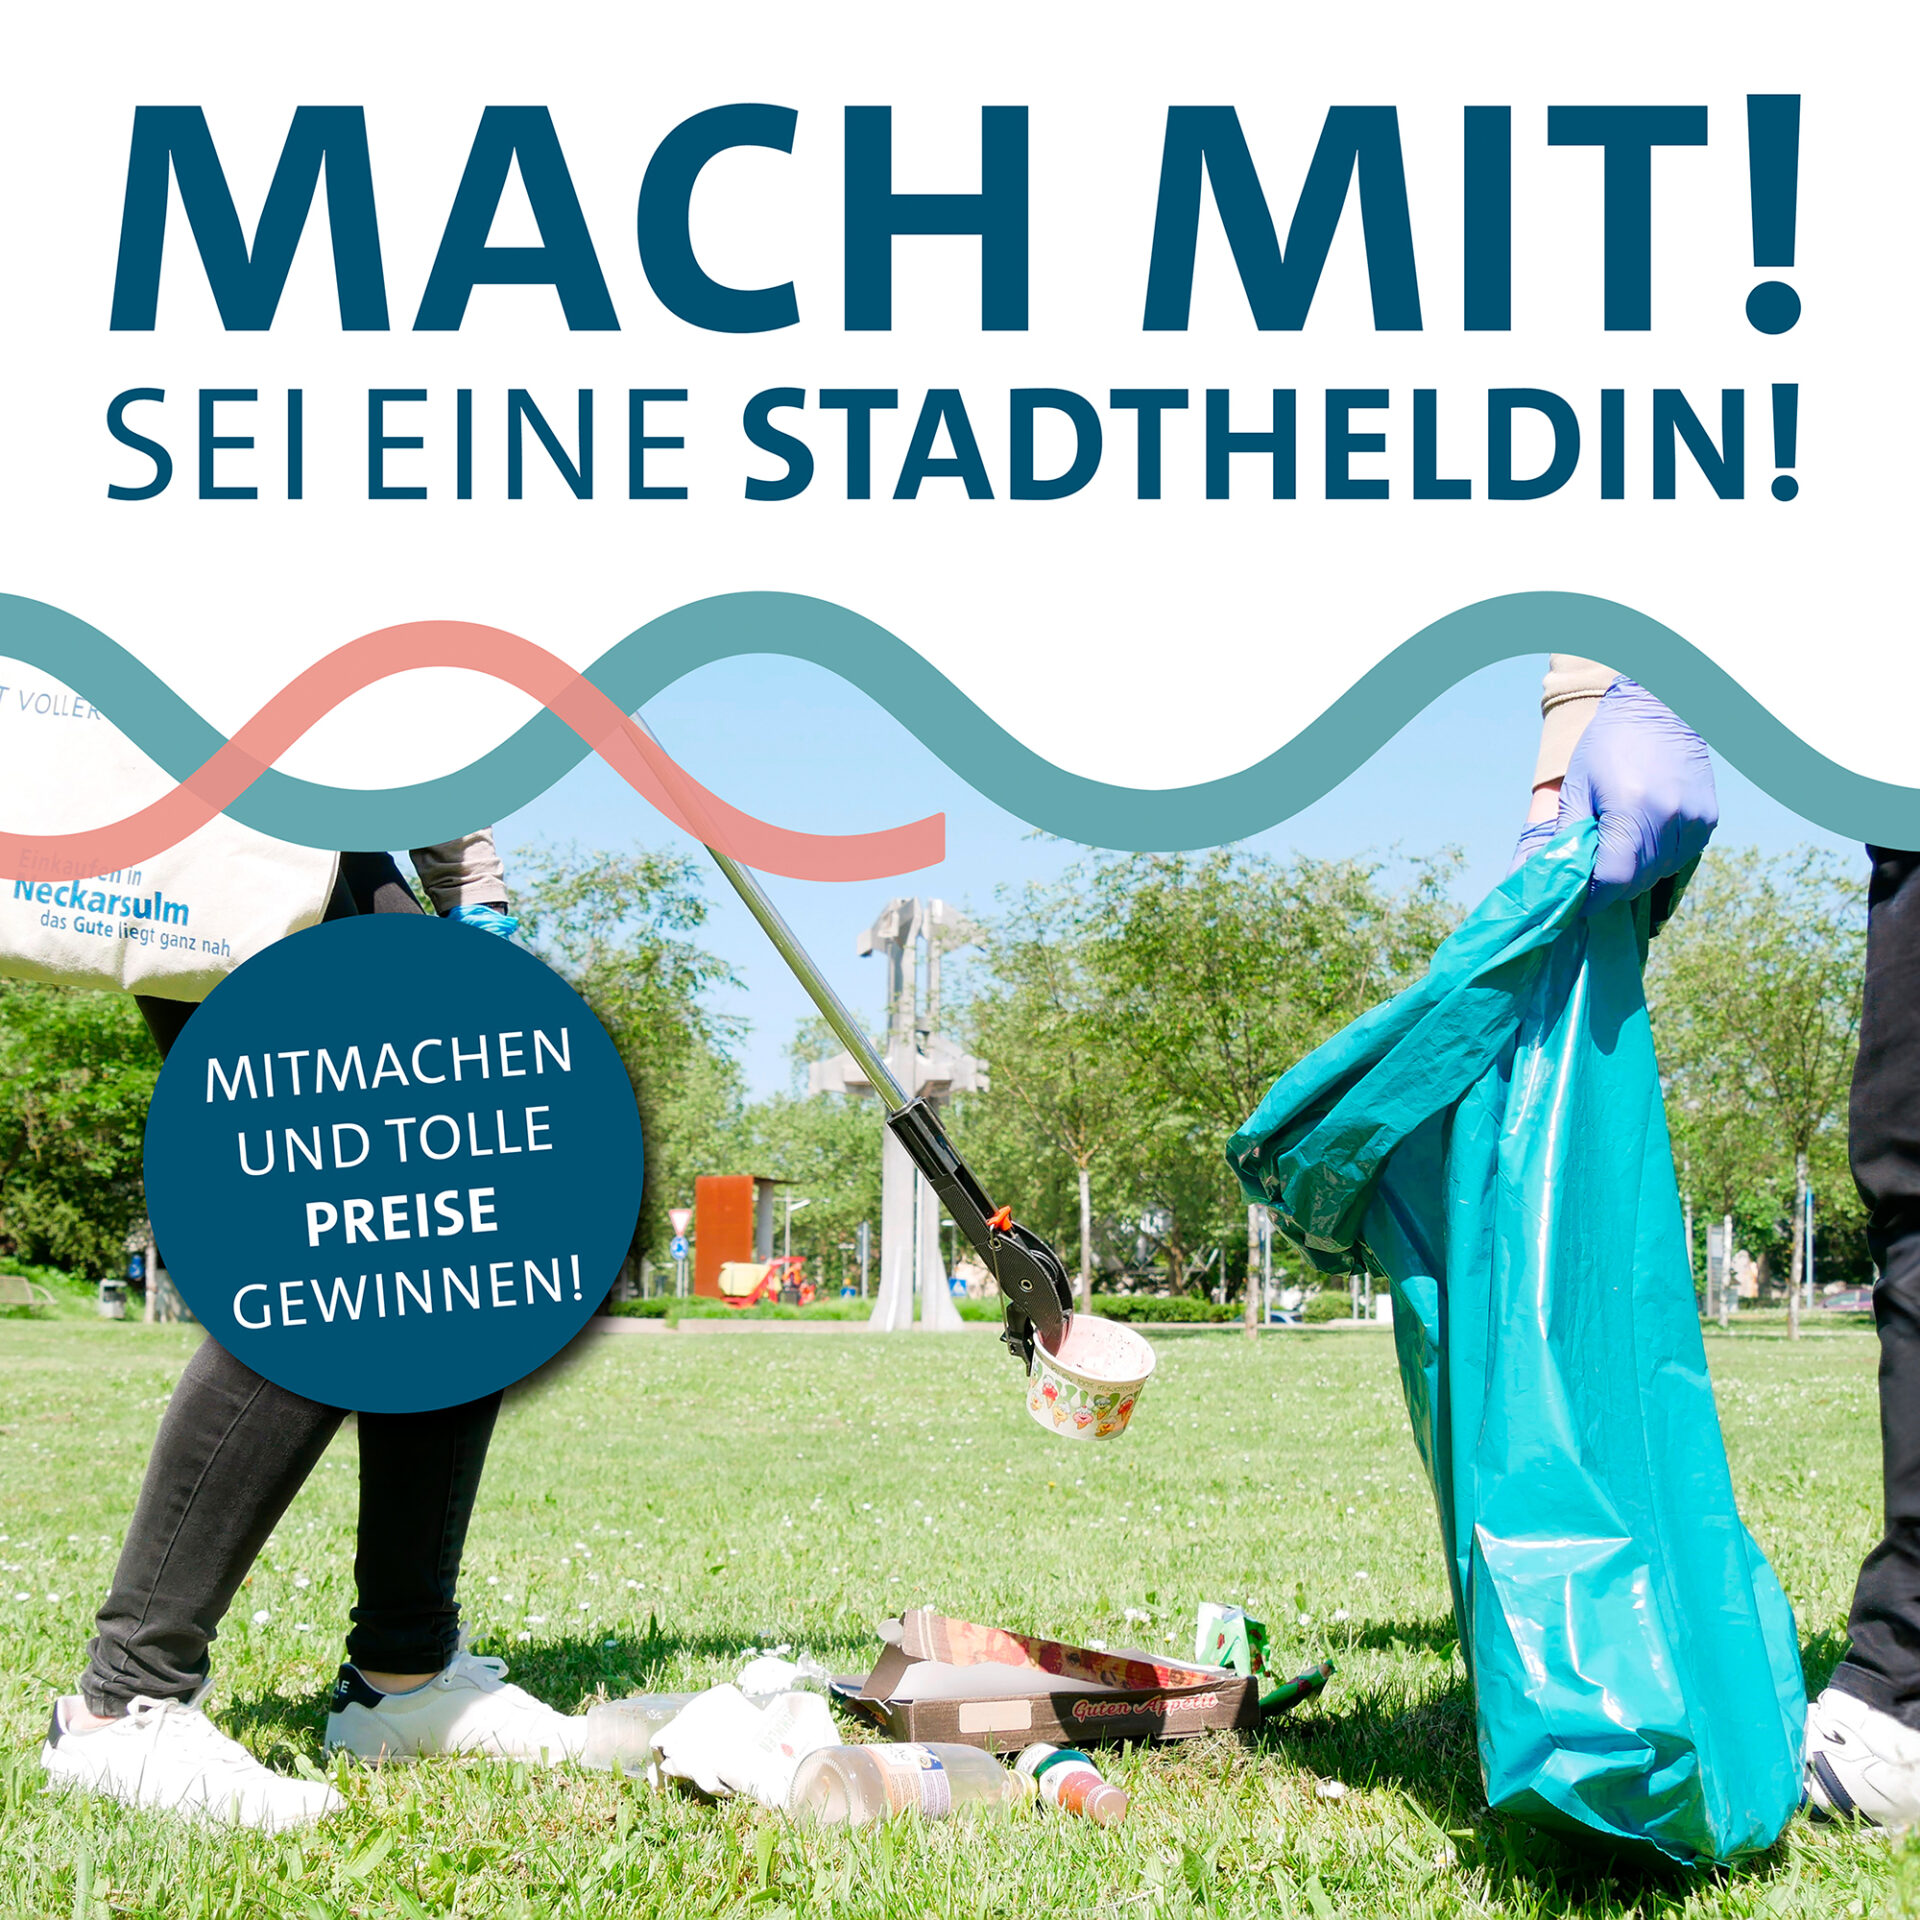 Sauberkeitskampagne der Stadt Neckarsulm (Baden-Württemberg)